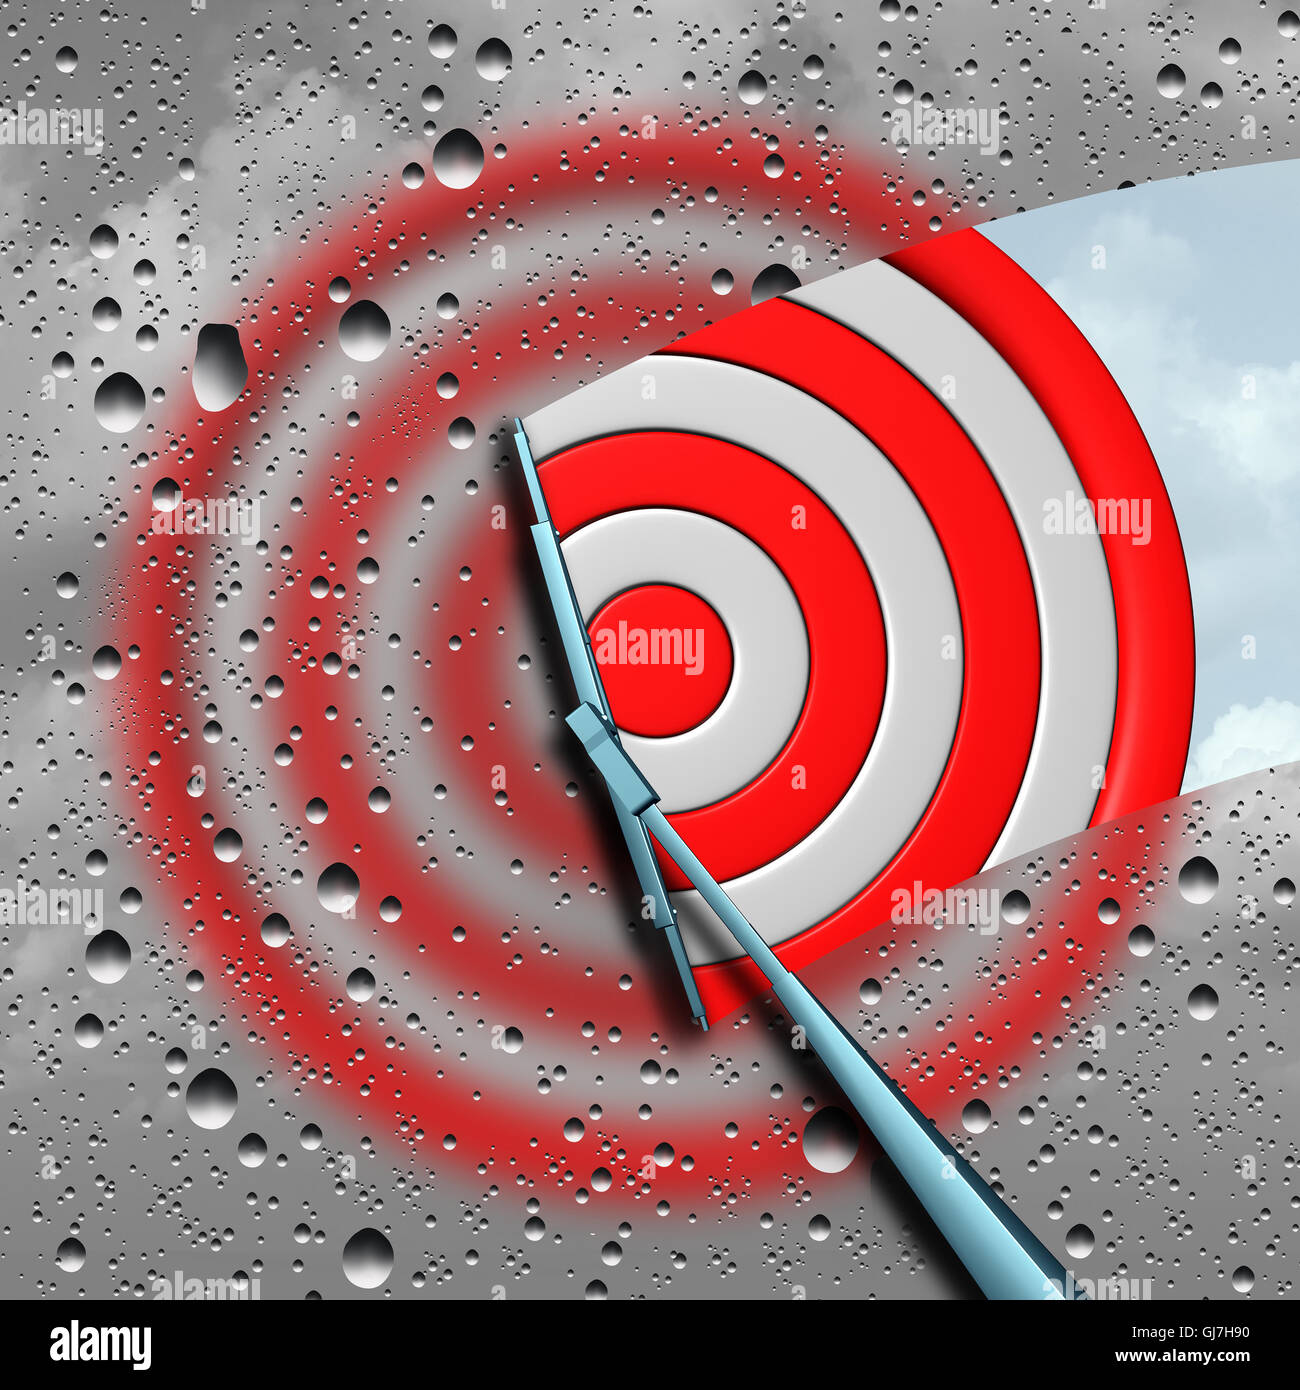 Concepto de destino como una borrosa wet Bulls eye dart junta de destino se limpia con un limpiador comercial como una metáfora para el enfoque claro objetivo centrado o icono como una ilustración 3D. Foto de stock